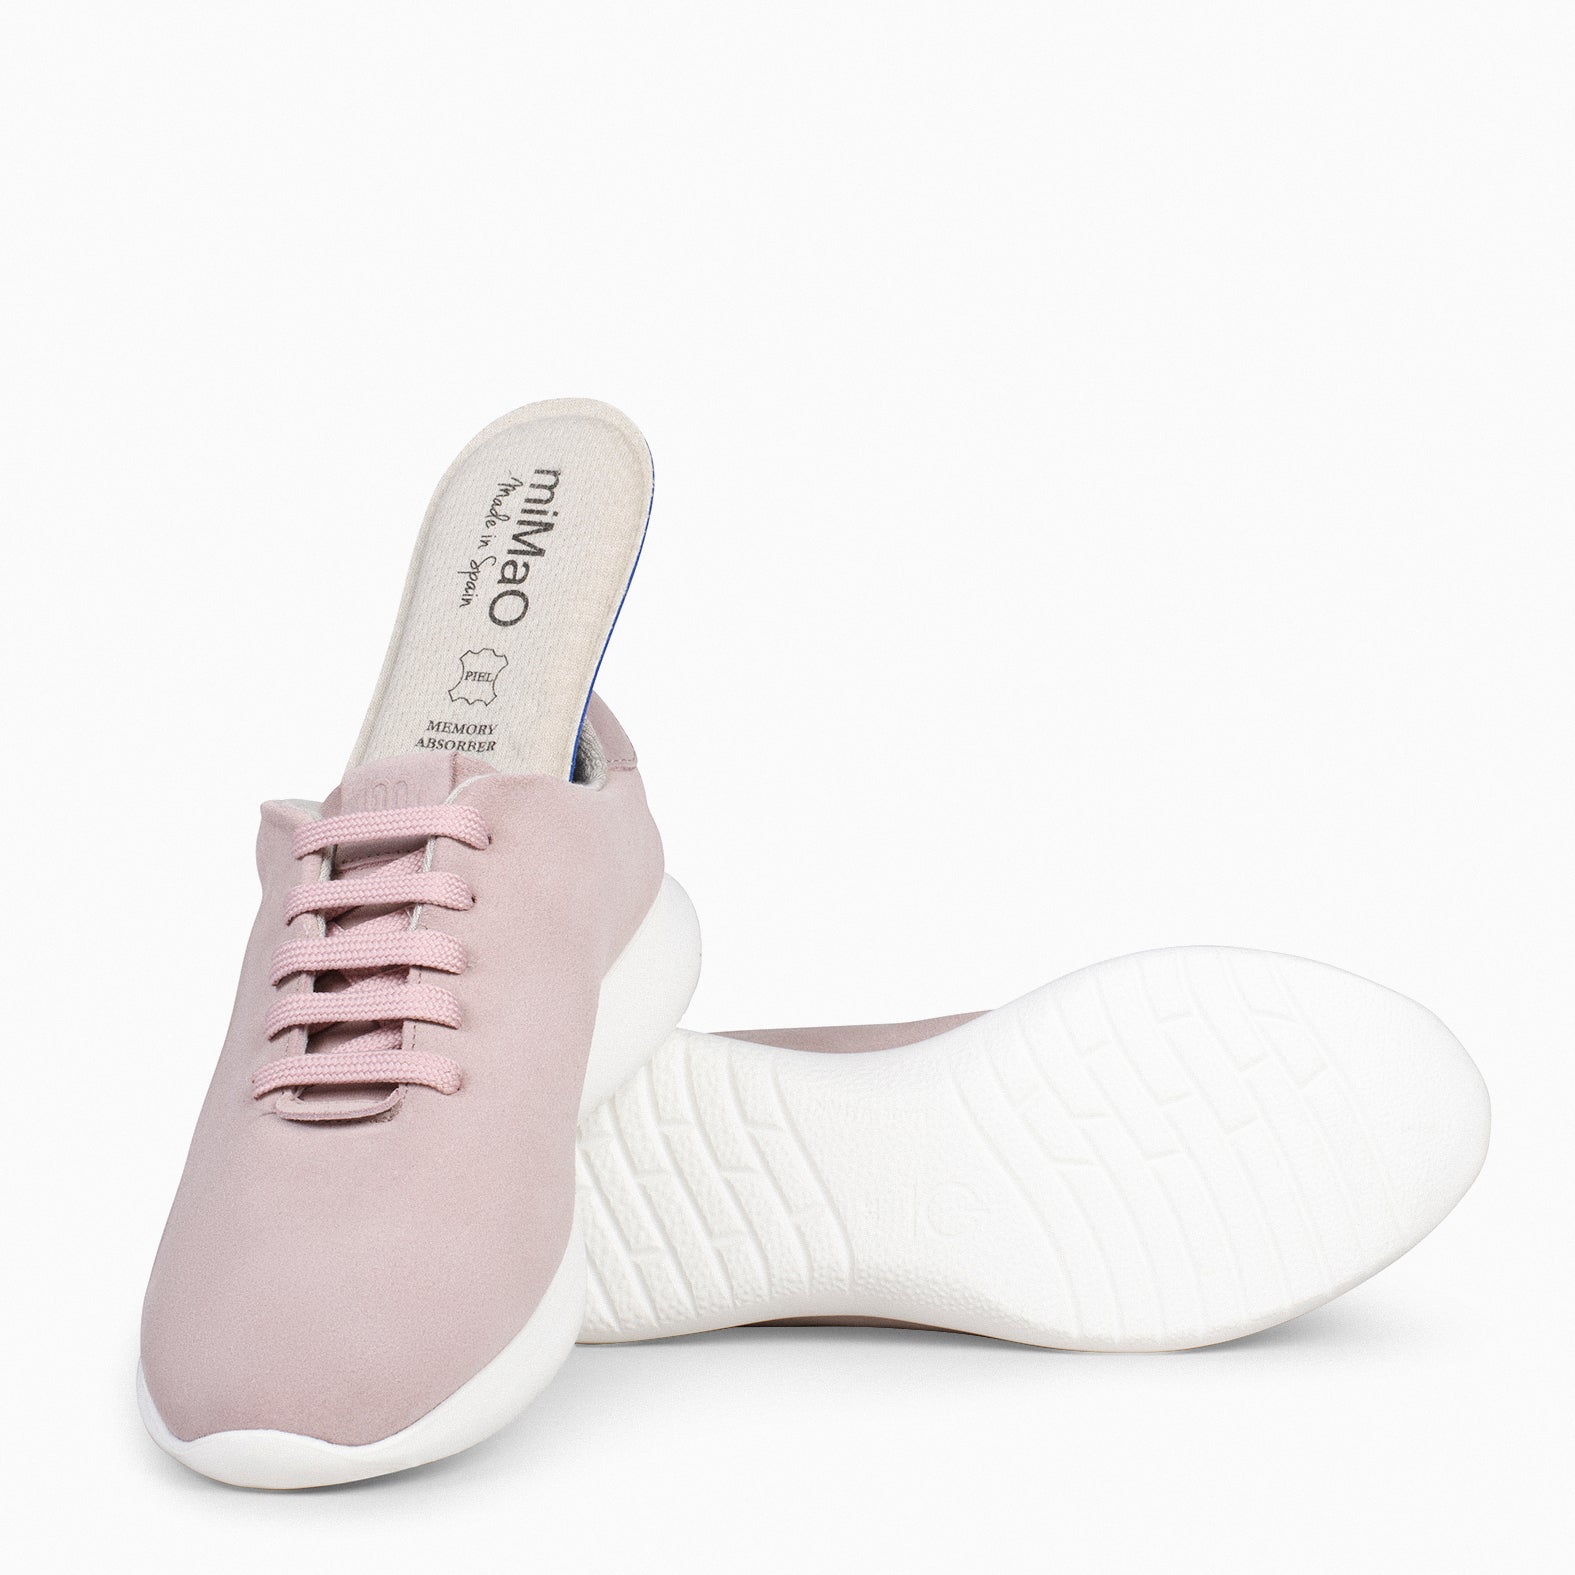 WALK – NUDE comfortable women sneakers